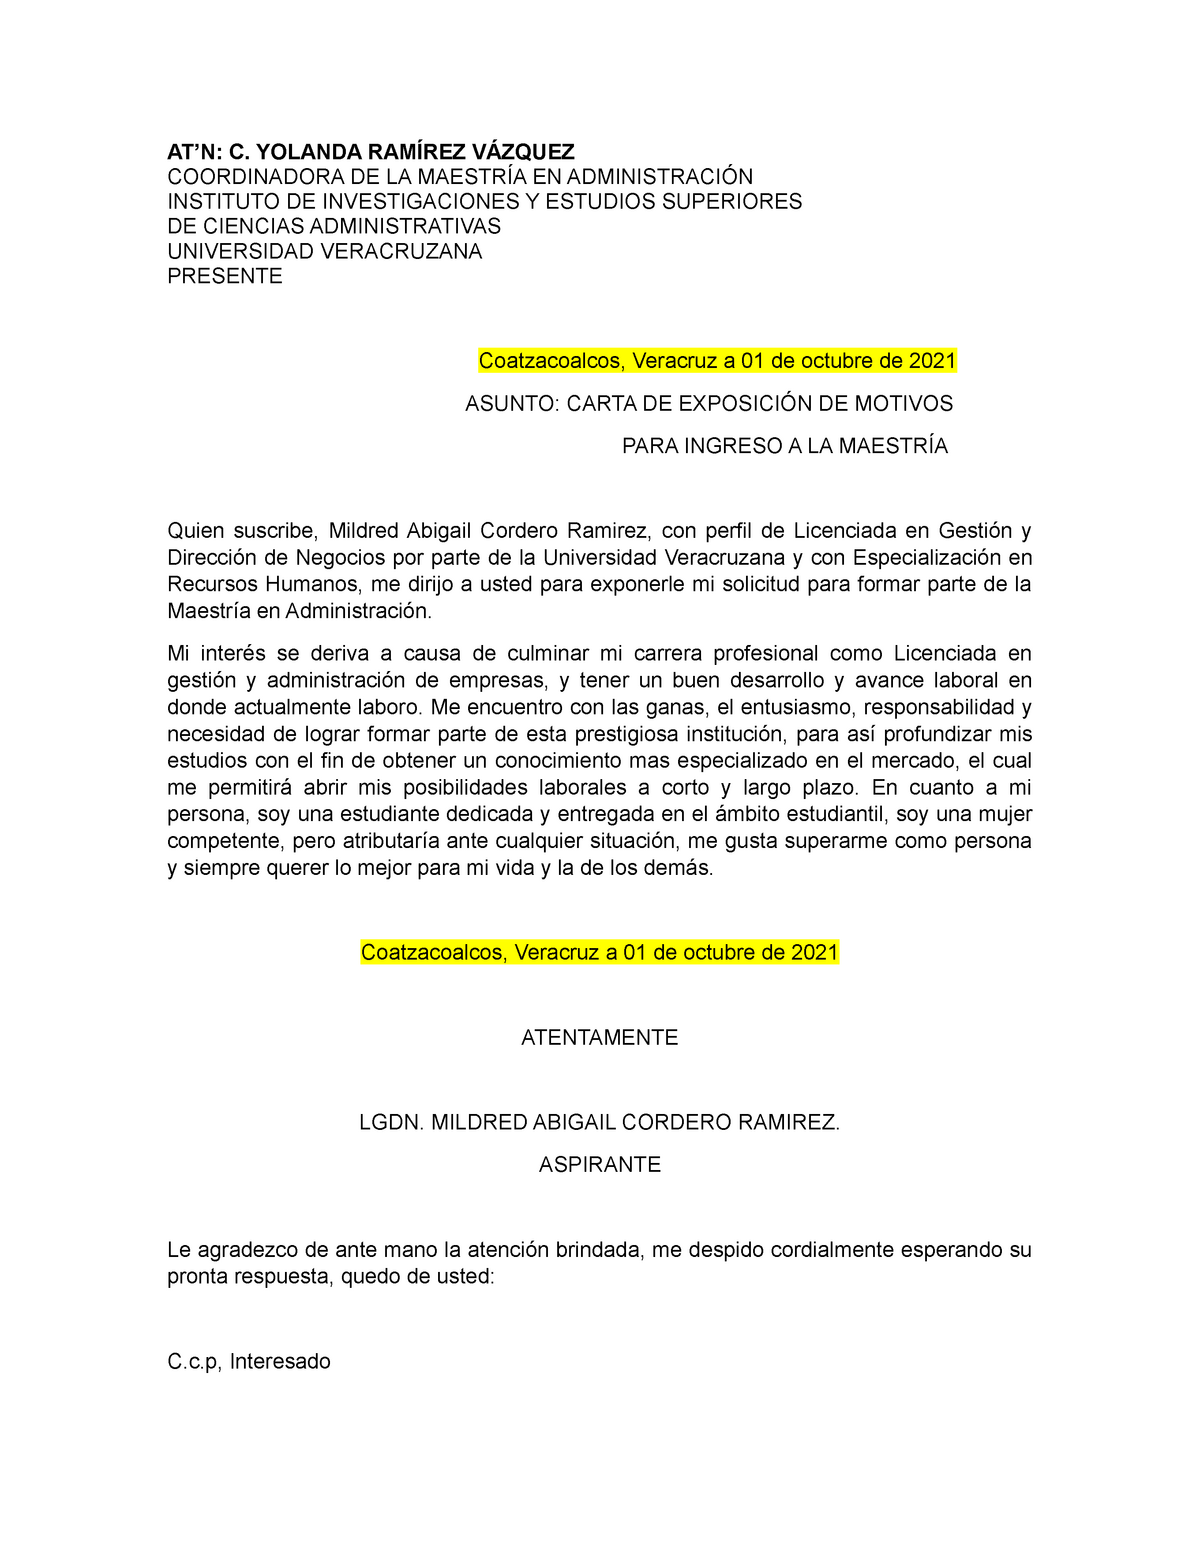 ejemplo de carta de motivos para ingresar a un posgrado - AT'N: C. YOLANDA  RAMÍREZ VÁZQUEZ - Studocu